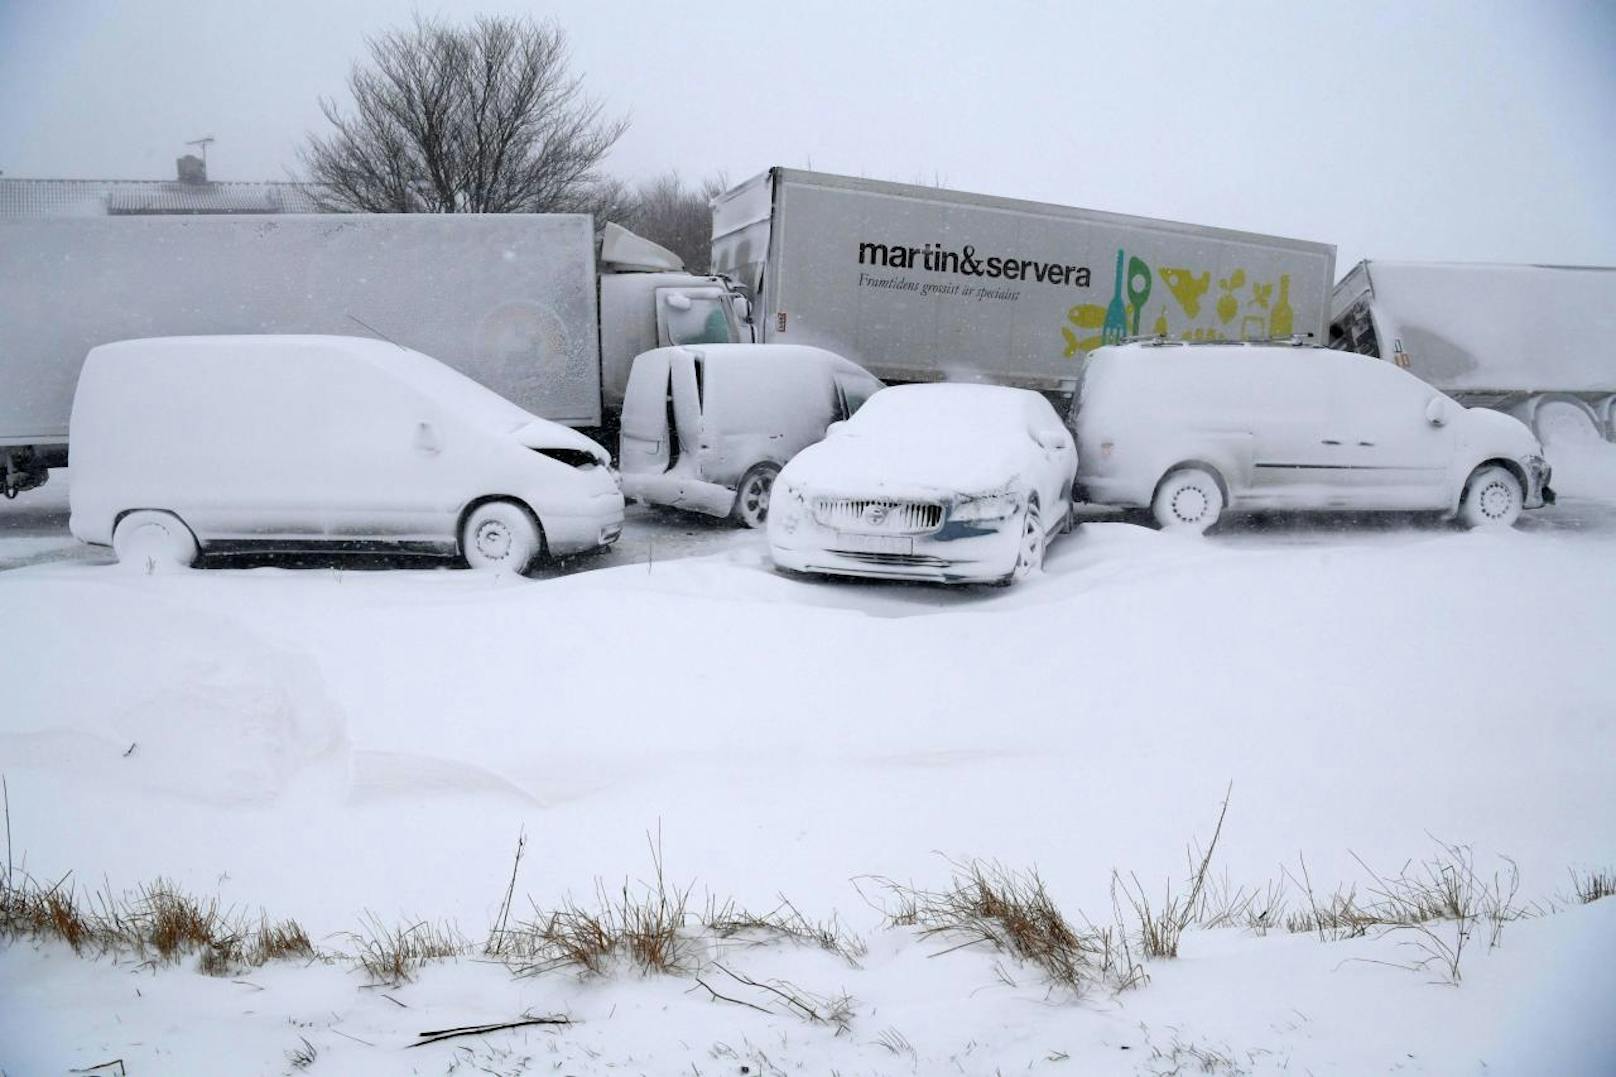 In Sjobo im Süden Schwedens blieben mehrere Lkw und Pkw auf einer Straße liegen und wurden komplett von Schnee zugedeckt